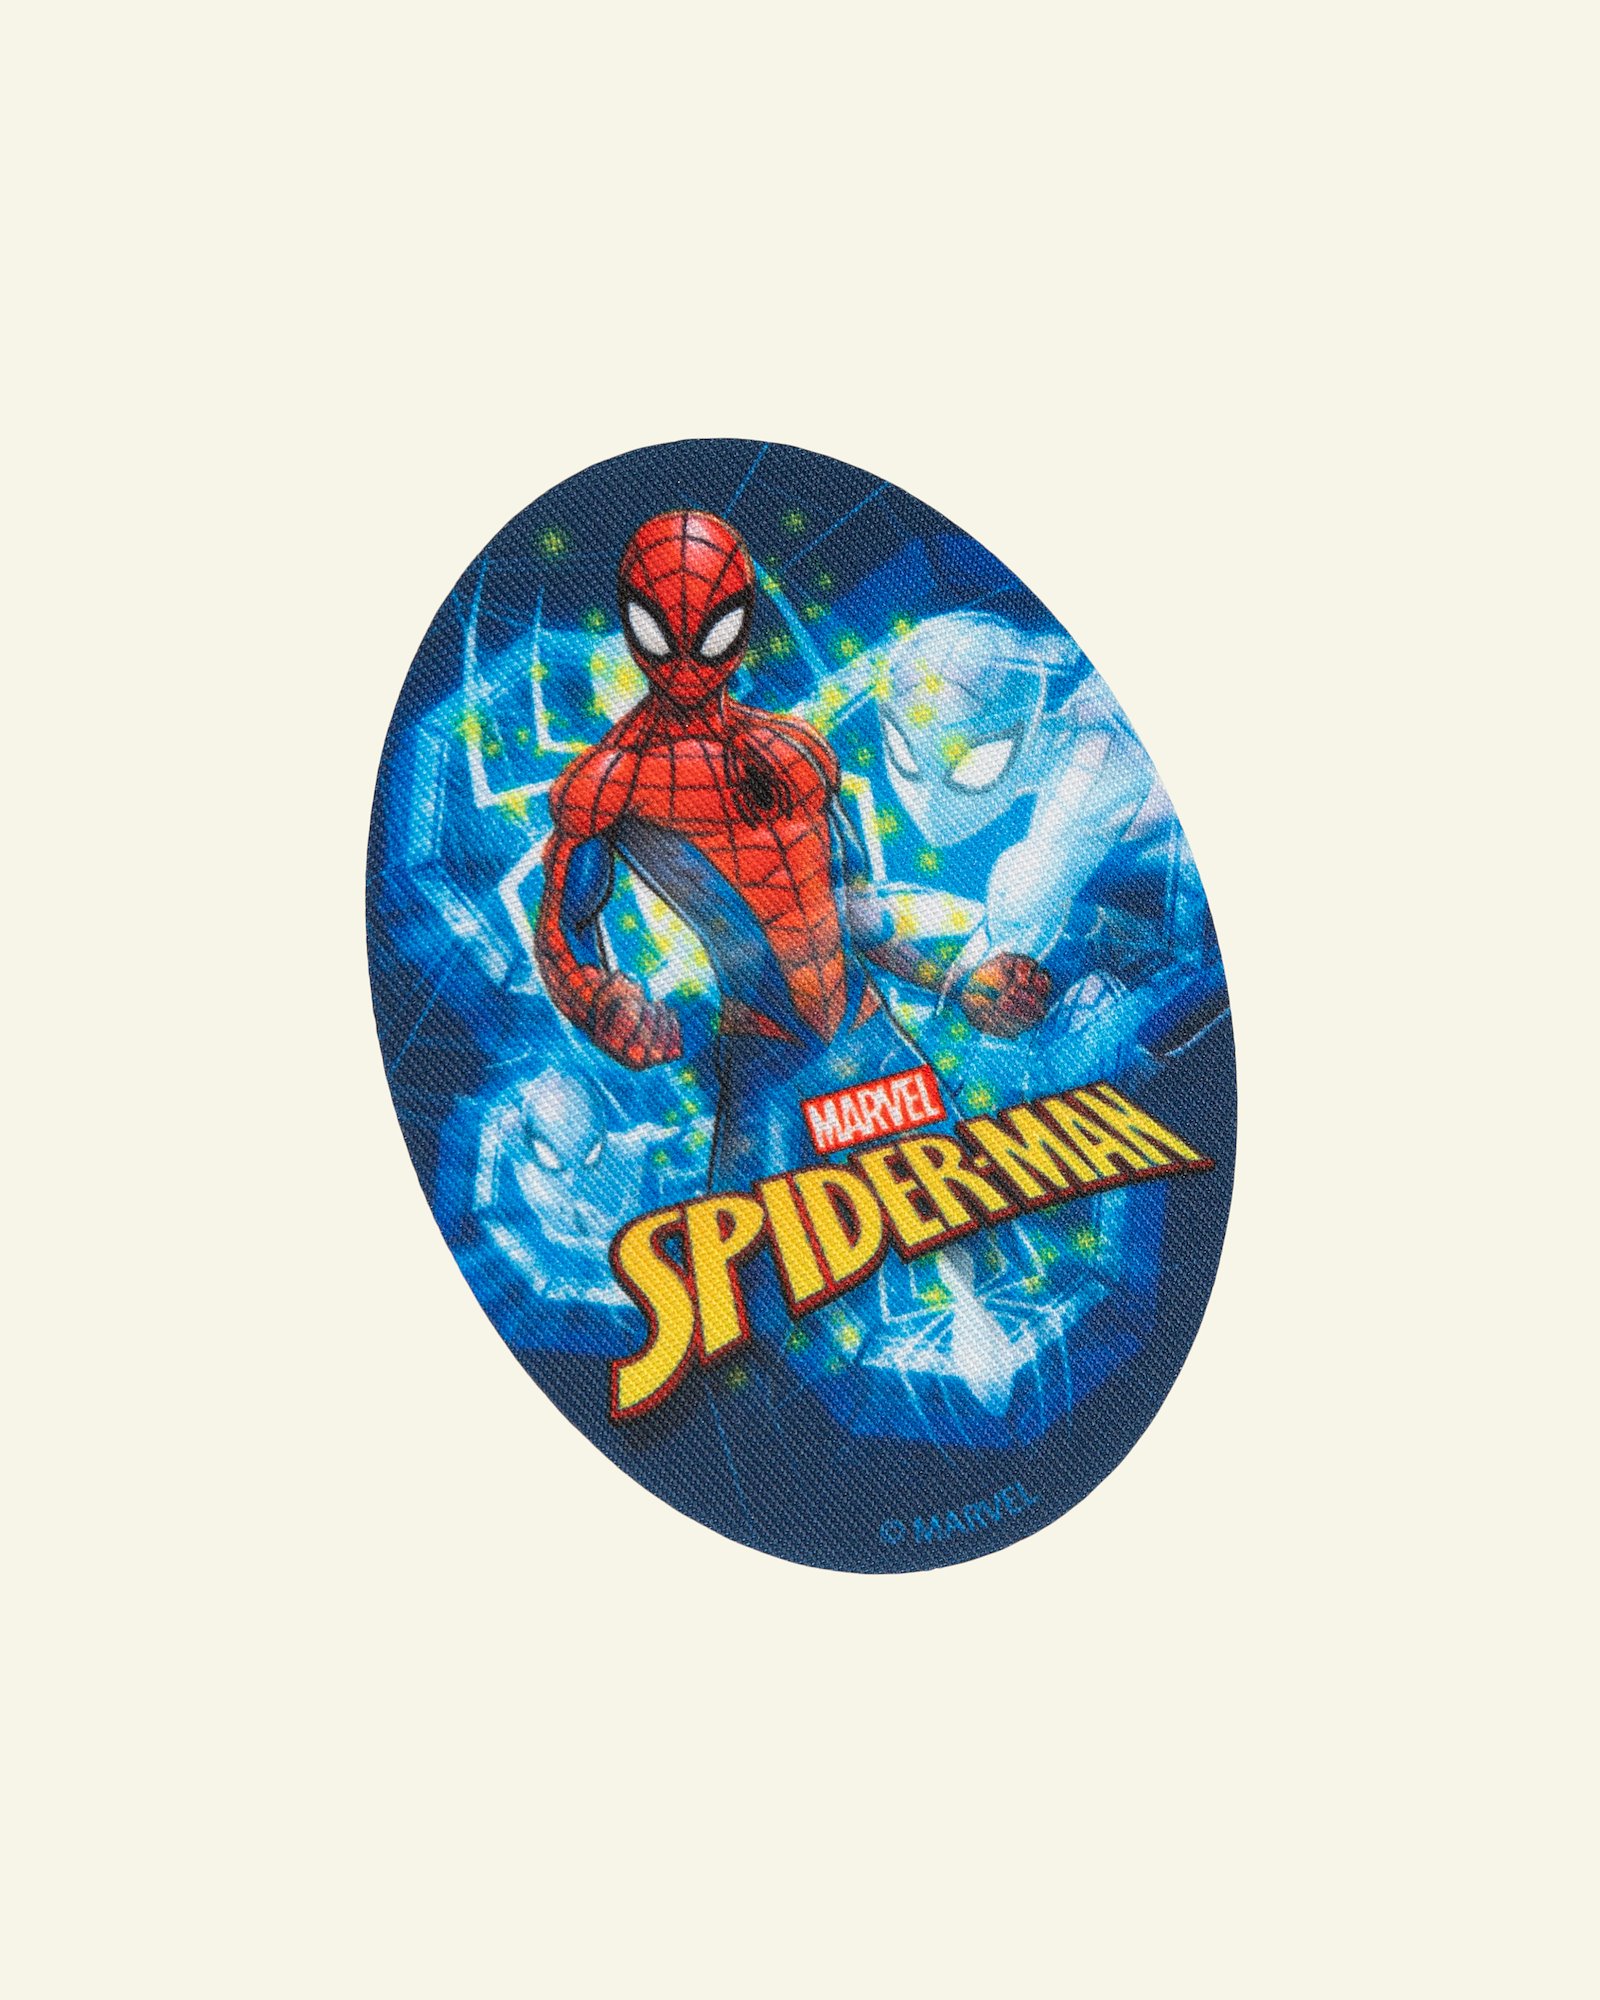 Symærke Spiderman 110x80mm blå/rød 1stk 24951_pack